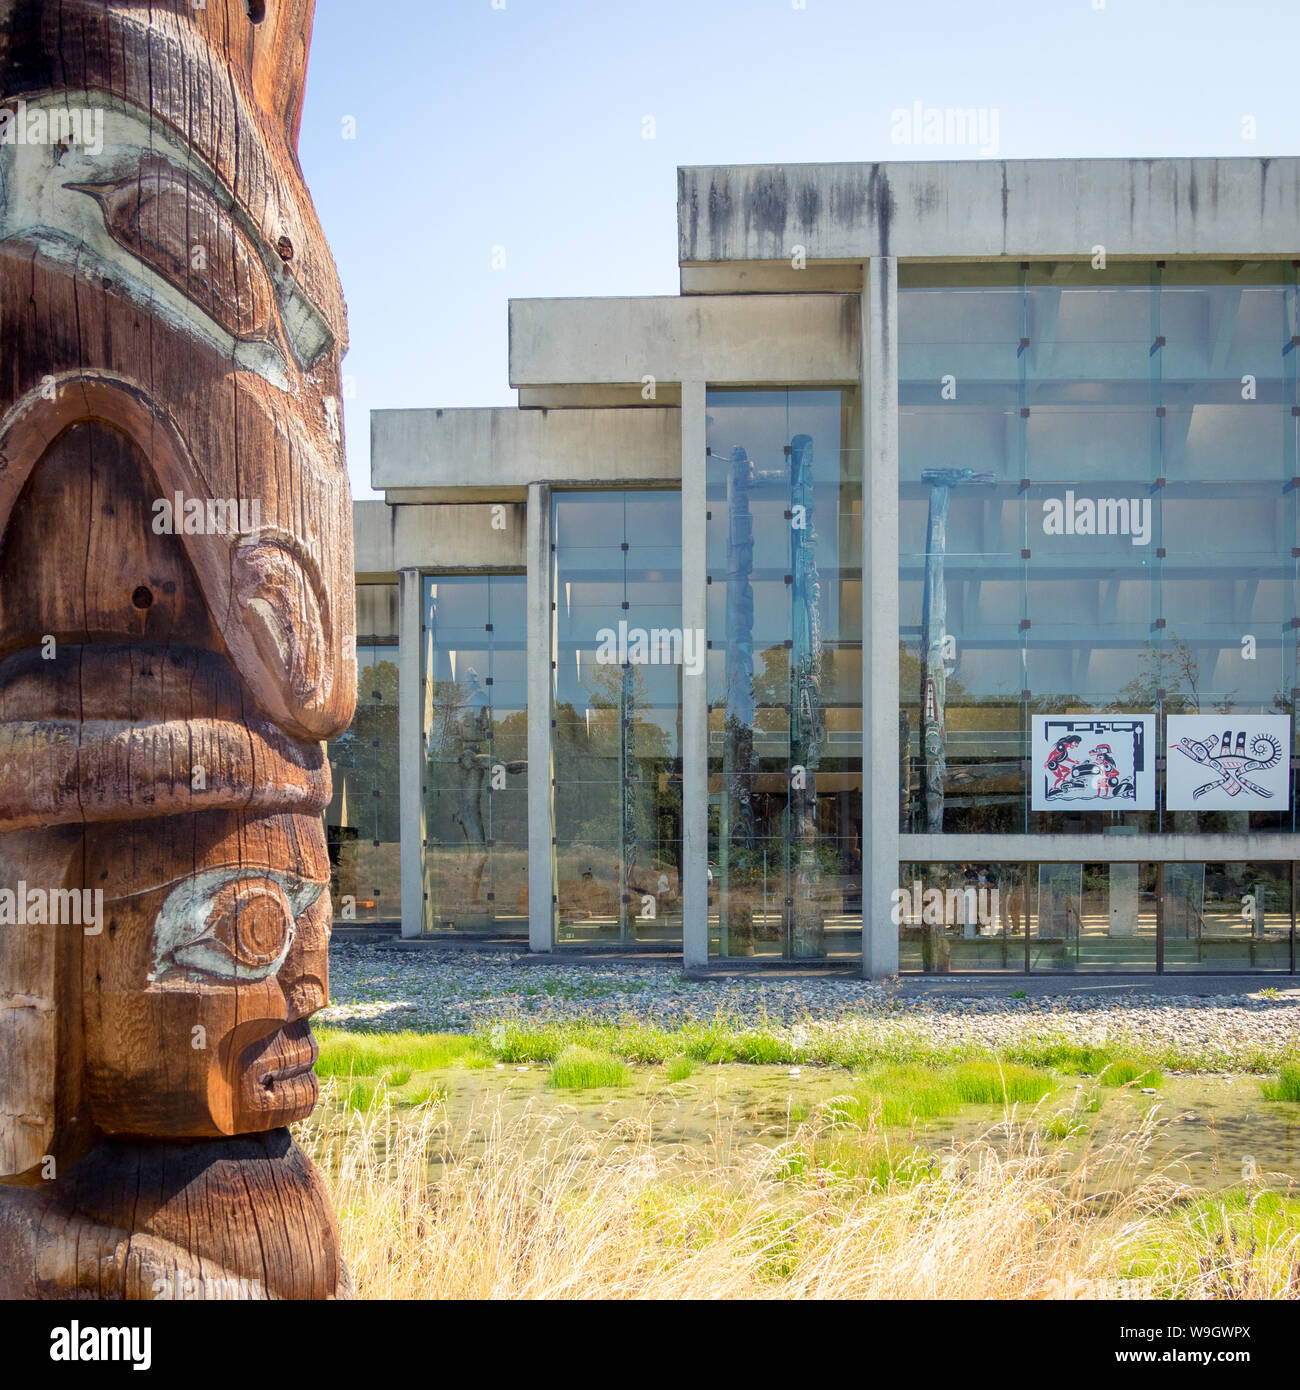 L'extérieur de l'Université de British Columbia Museum of Anthropology (Musée d'anthropologie de l'université) à Vancouver, Colombie-Britannique, Canada. Banque D'Images